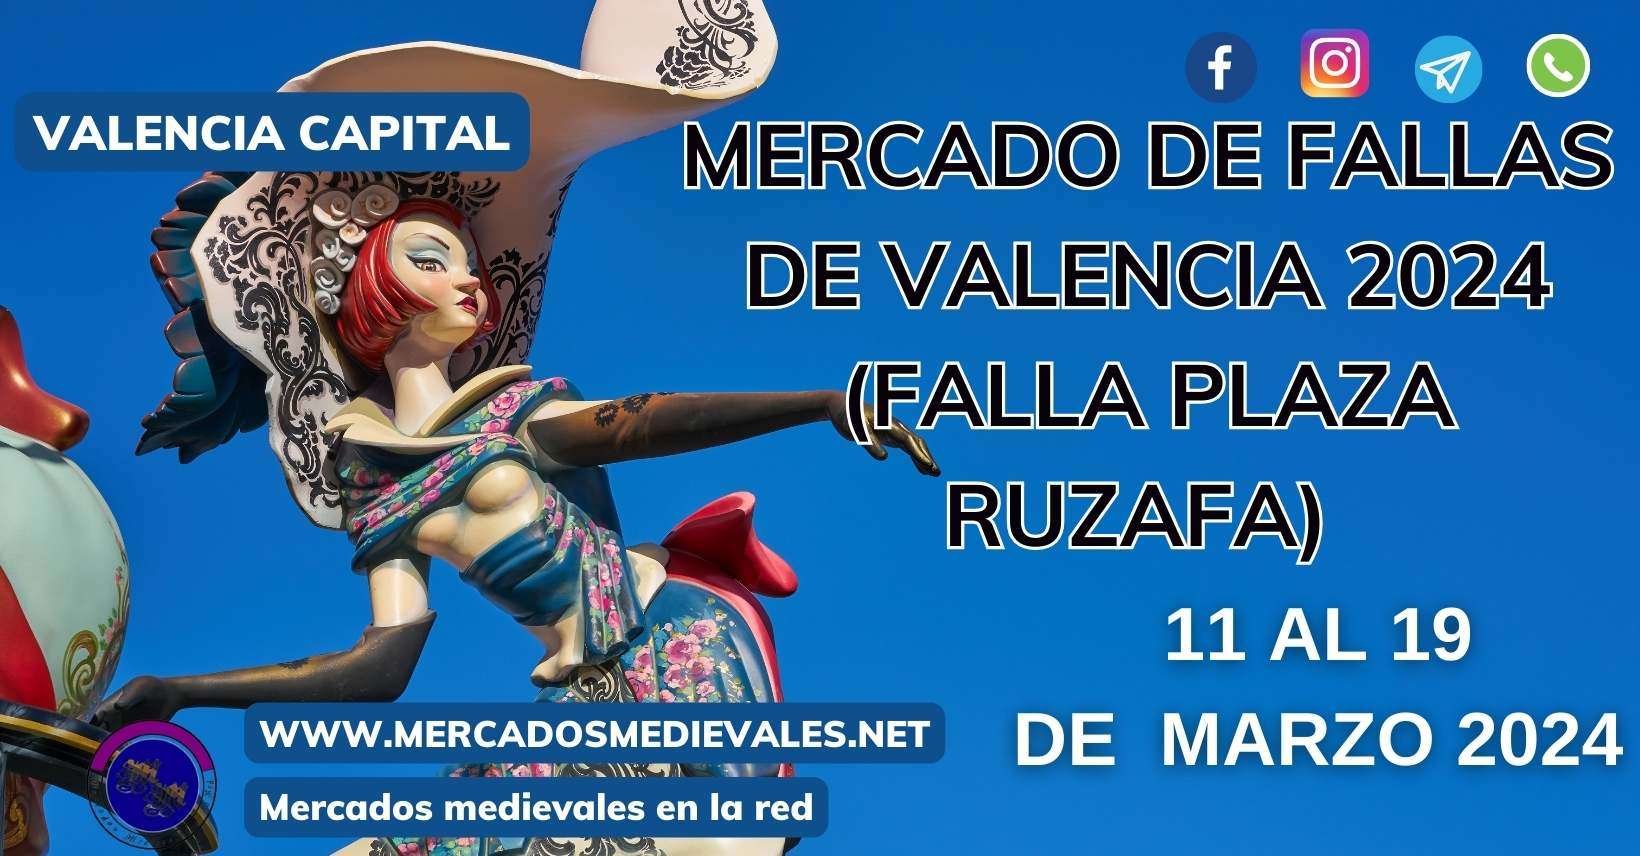 MERCADOS MEDIEVALES  - MERCADO DE FALLA DE VALENCIA 2024 ( Falla Plaza Ruzafa)  